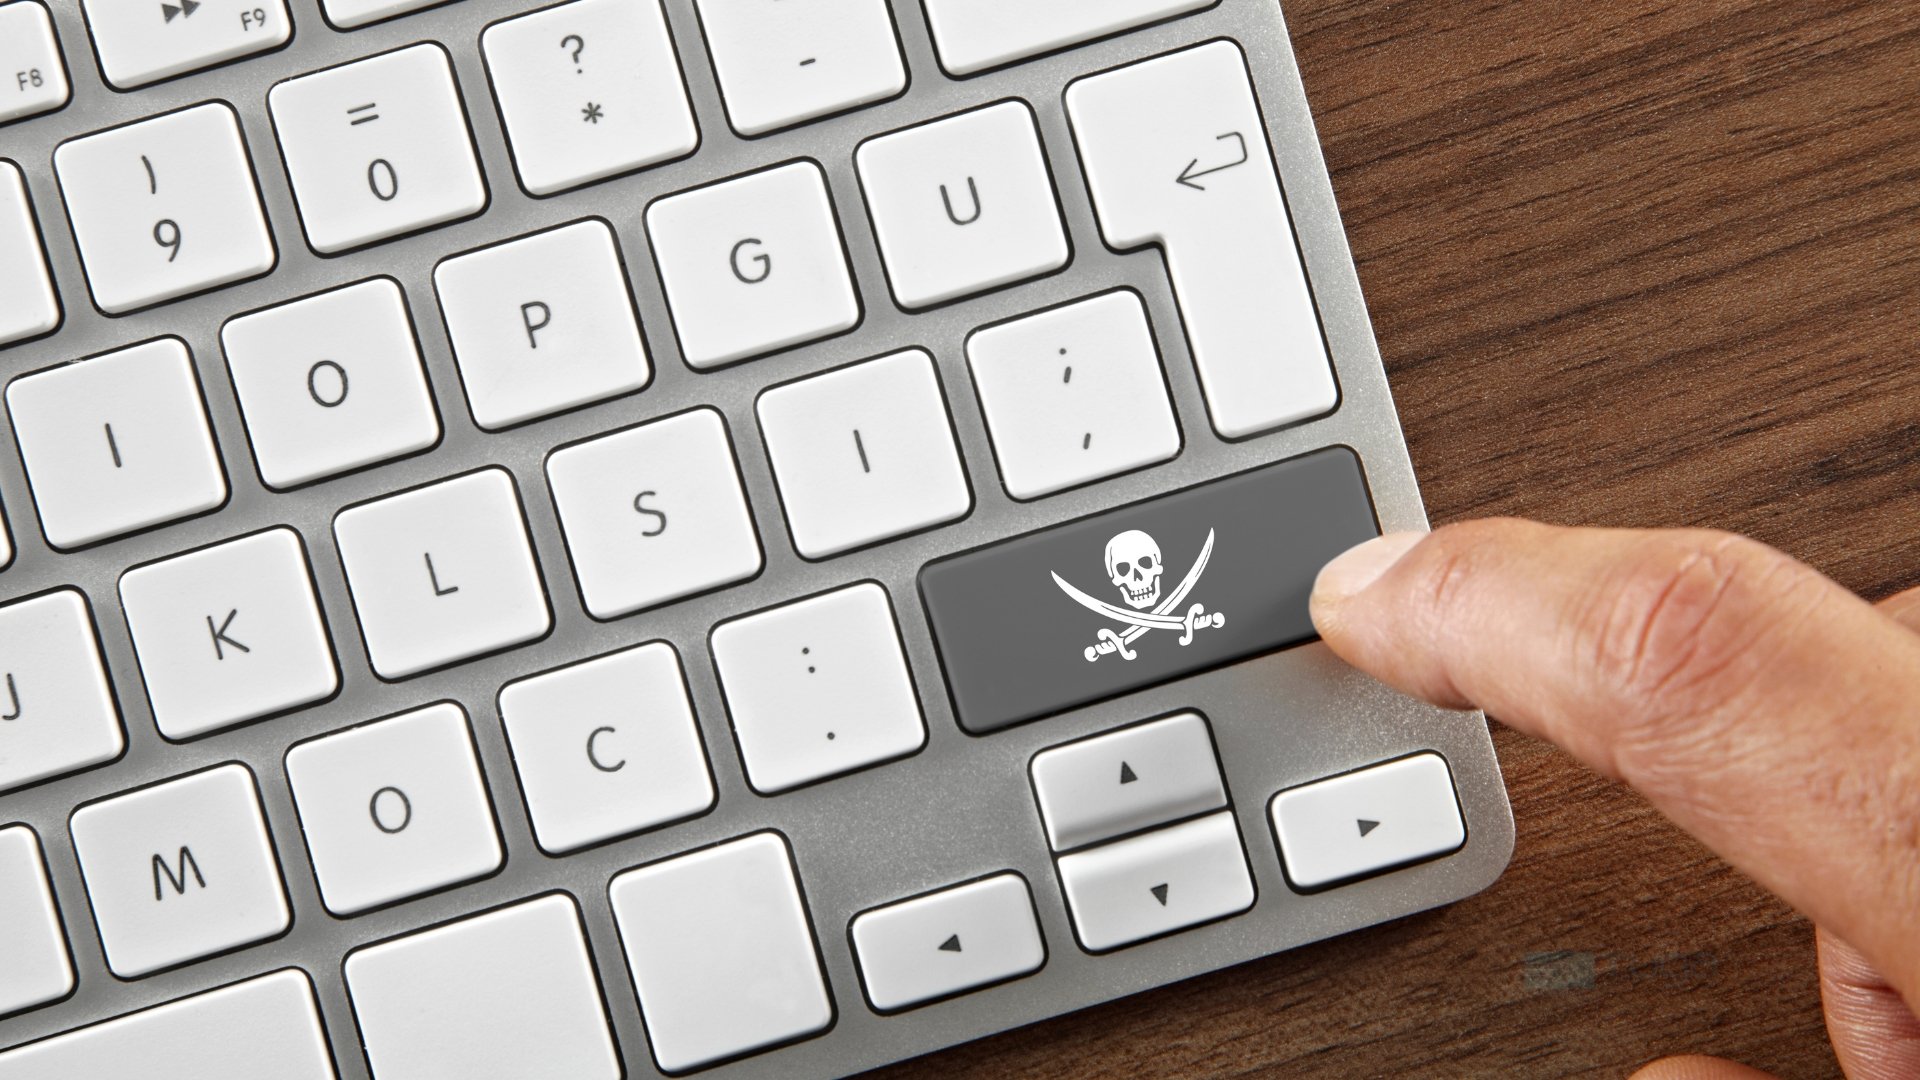 Pirataria em teclado